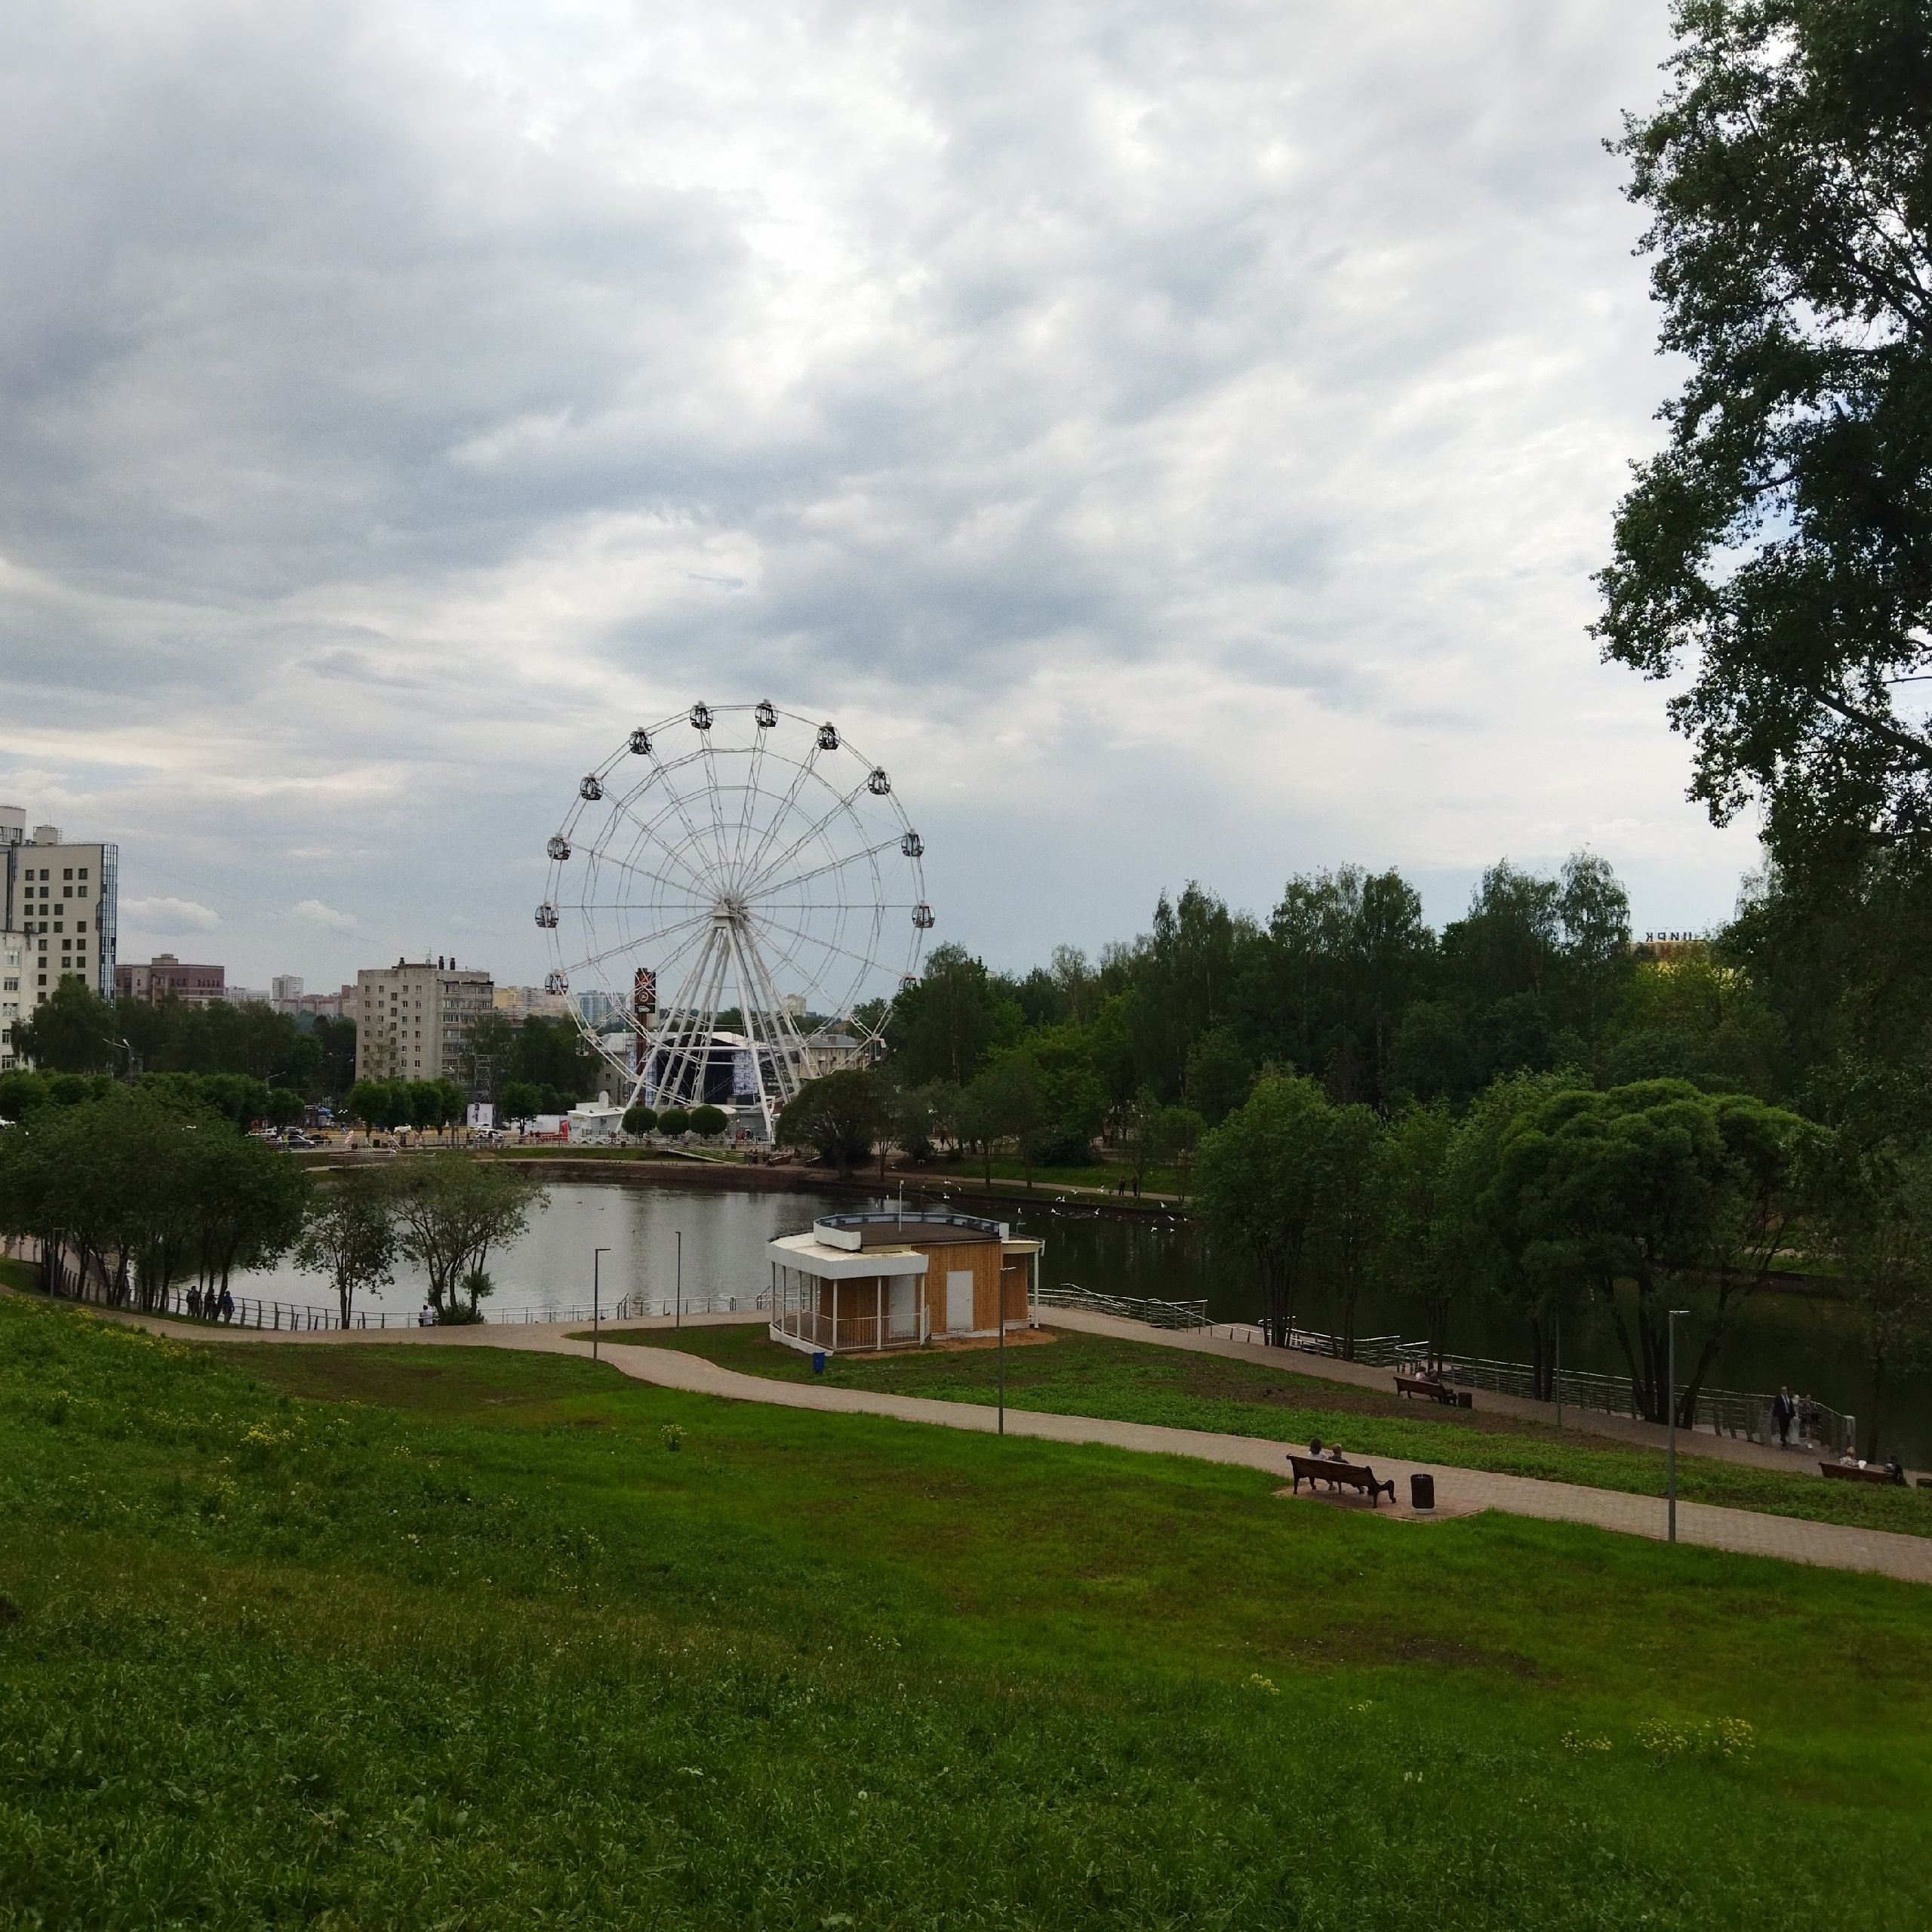 Кратковременные дожди и жара: какой будет погода в Кирове 17-19 июня